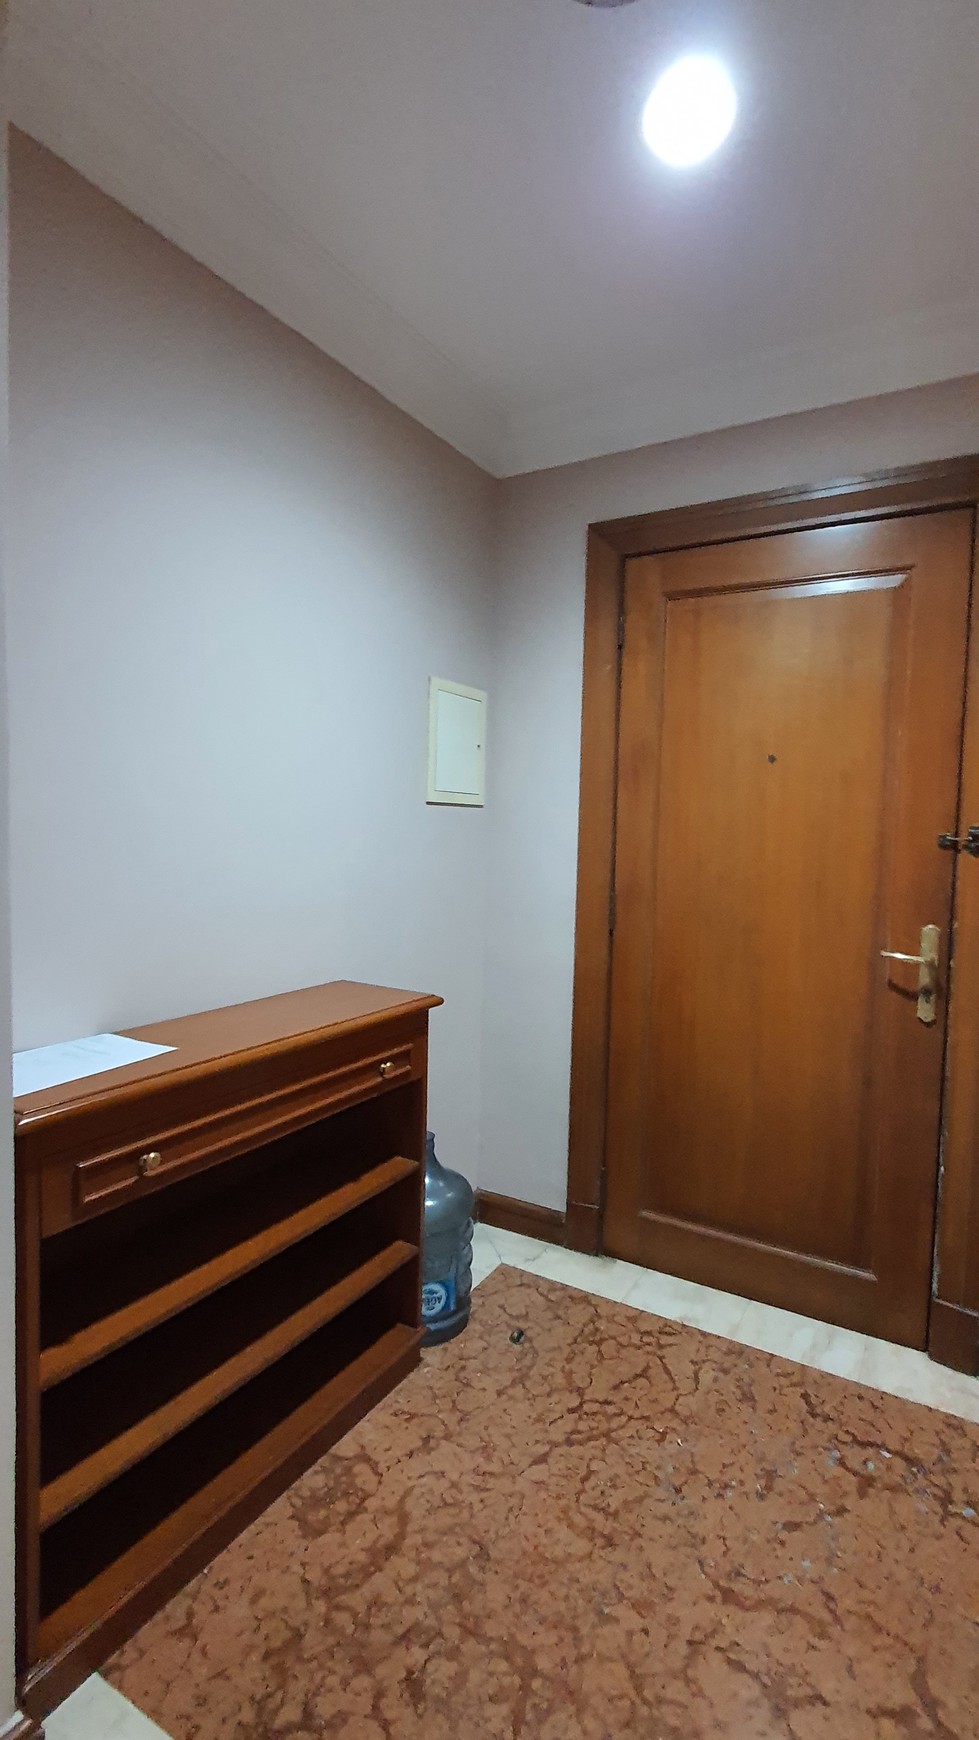 Apartemen type 1 Bedroom siap huni di Jakarta Selatan.